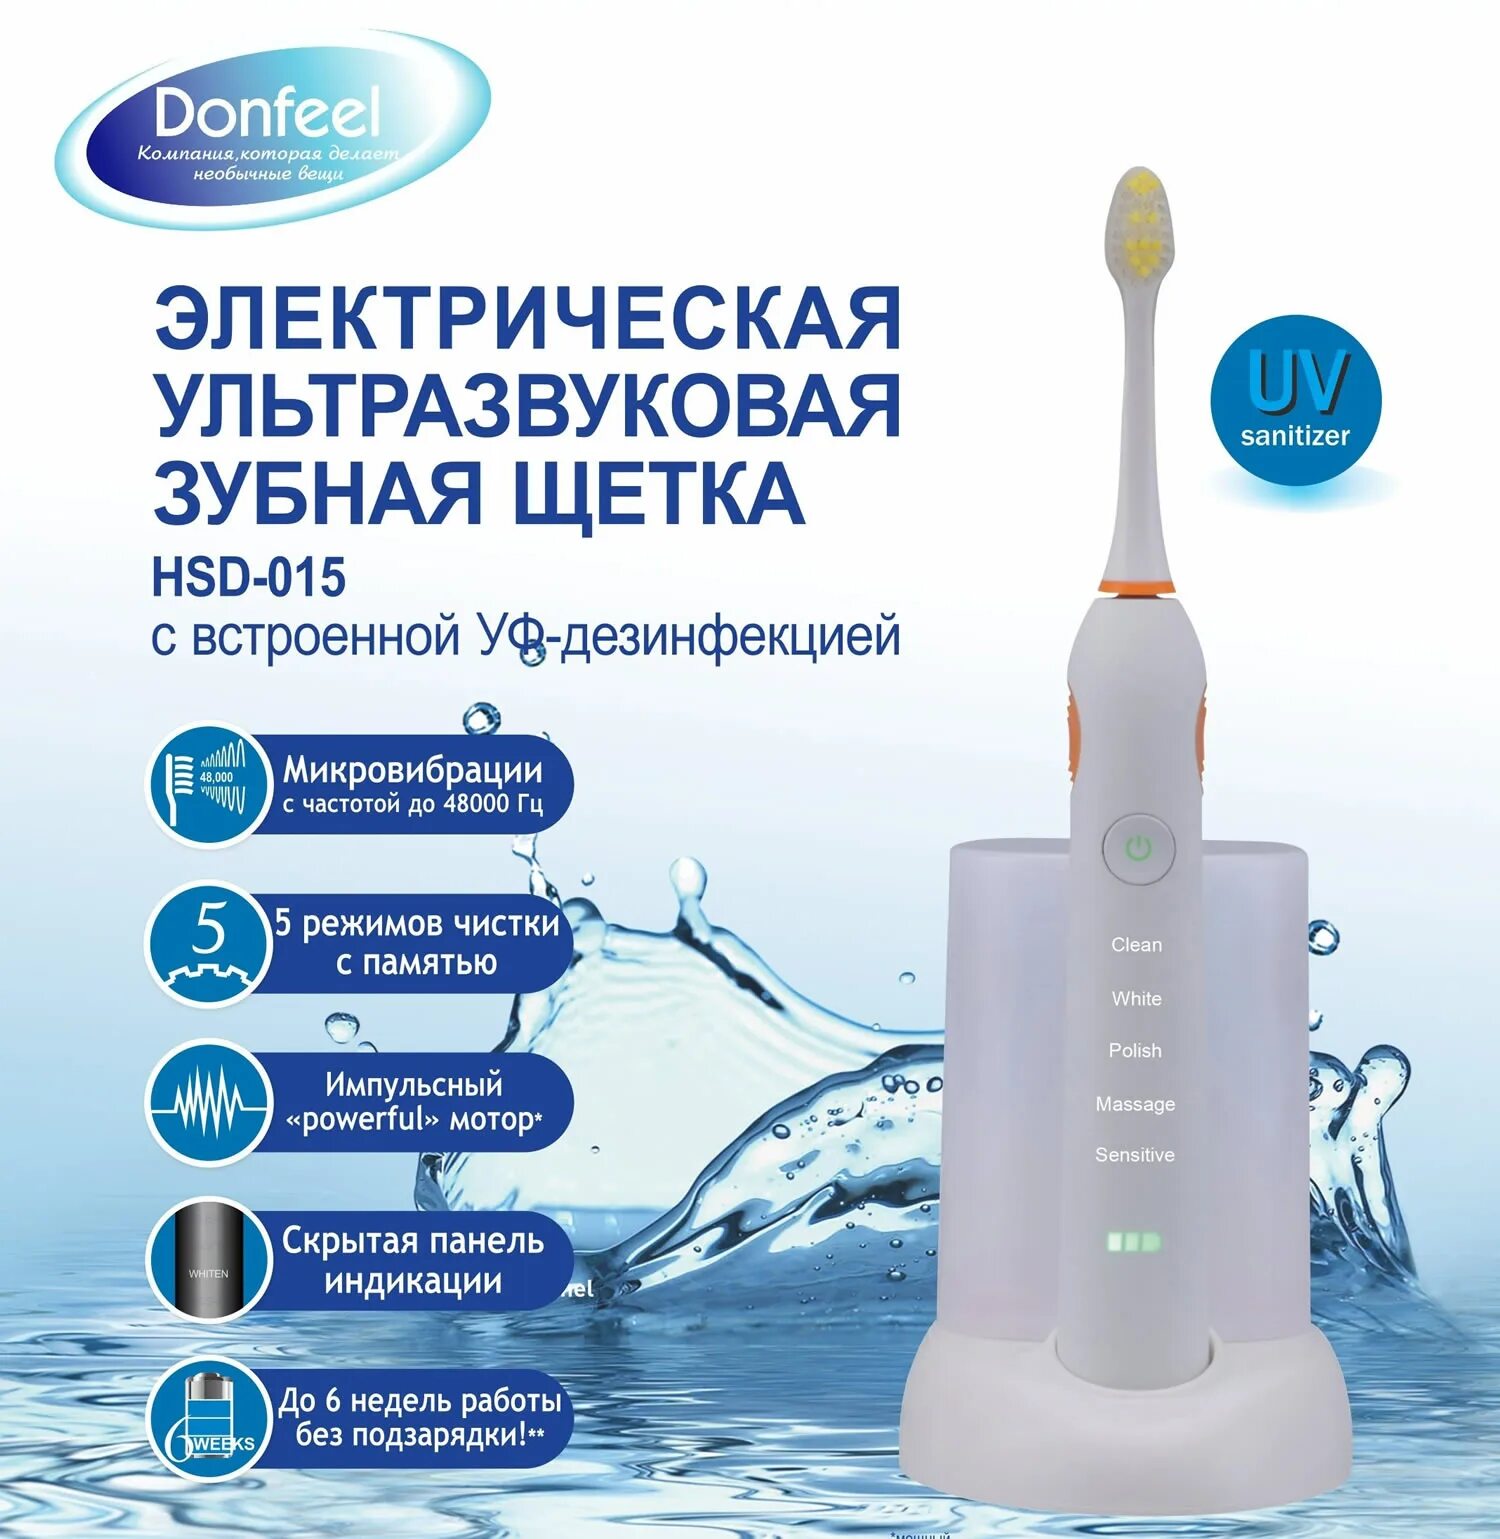 Как называется инструмент для чистки зубов ультразвуком. Электрическая зубная щетка Donfeel HSD-015 белая. Донфил ультразвуковая щетка. Ультразвуковая зубная щетка Donfeel. Ультразвуковая зубная щетка Ultrasonic.